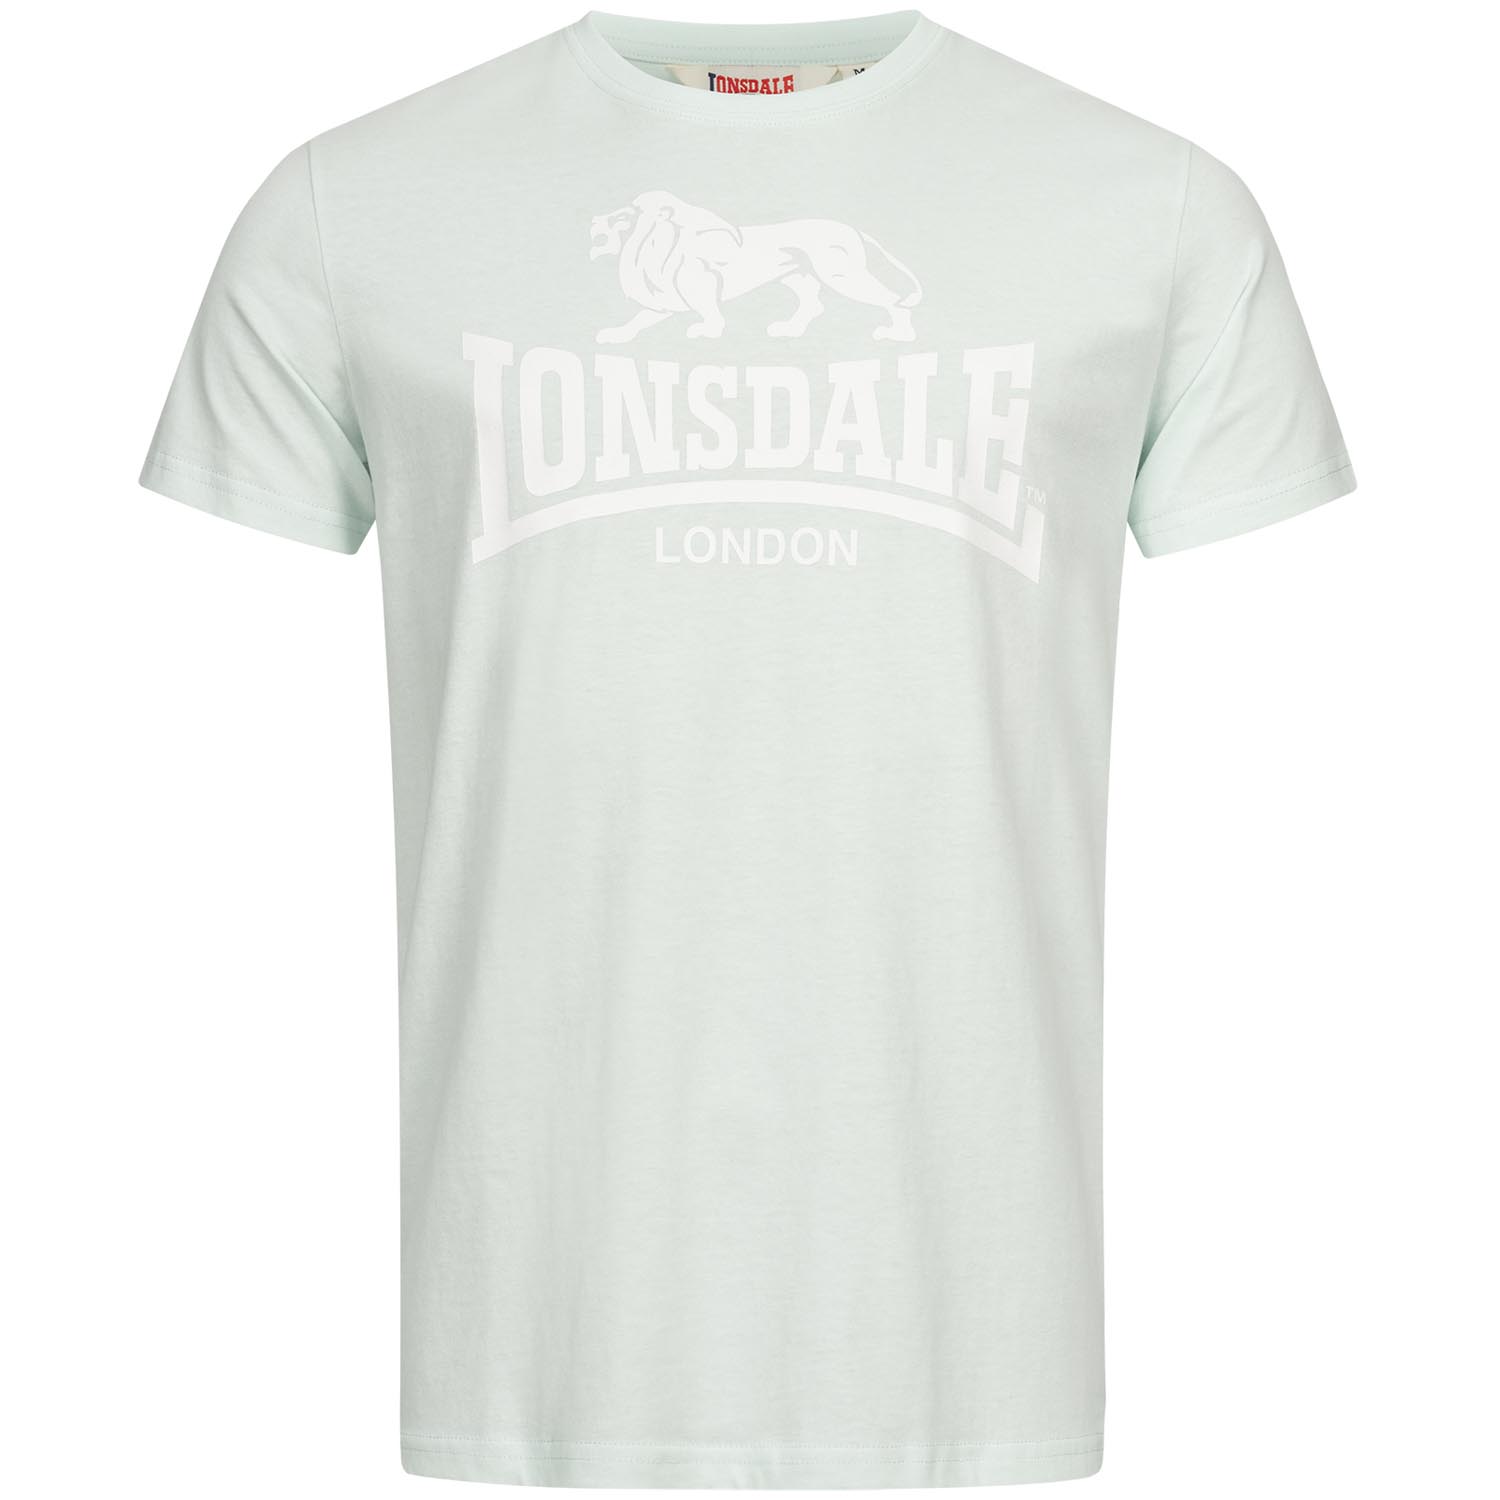 Lonsdale T-Shirt, St Erney, mint, S